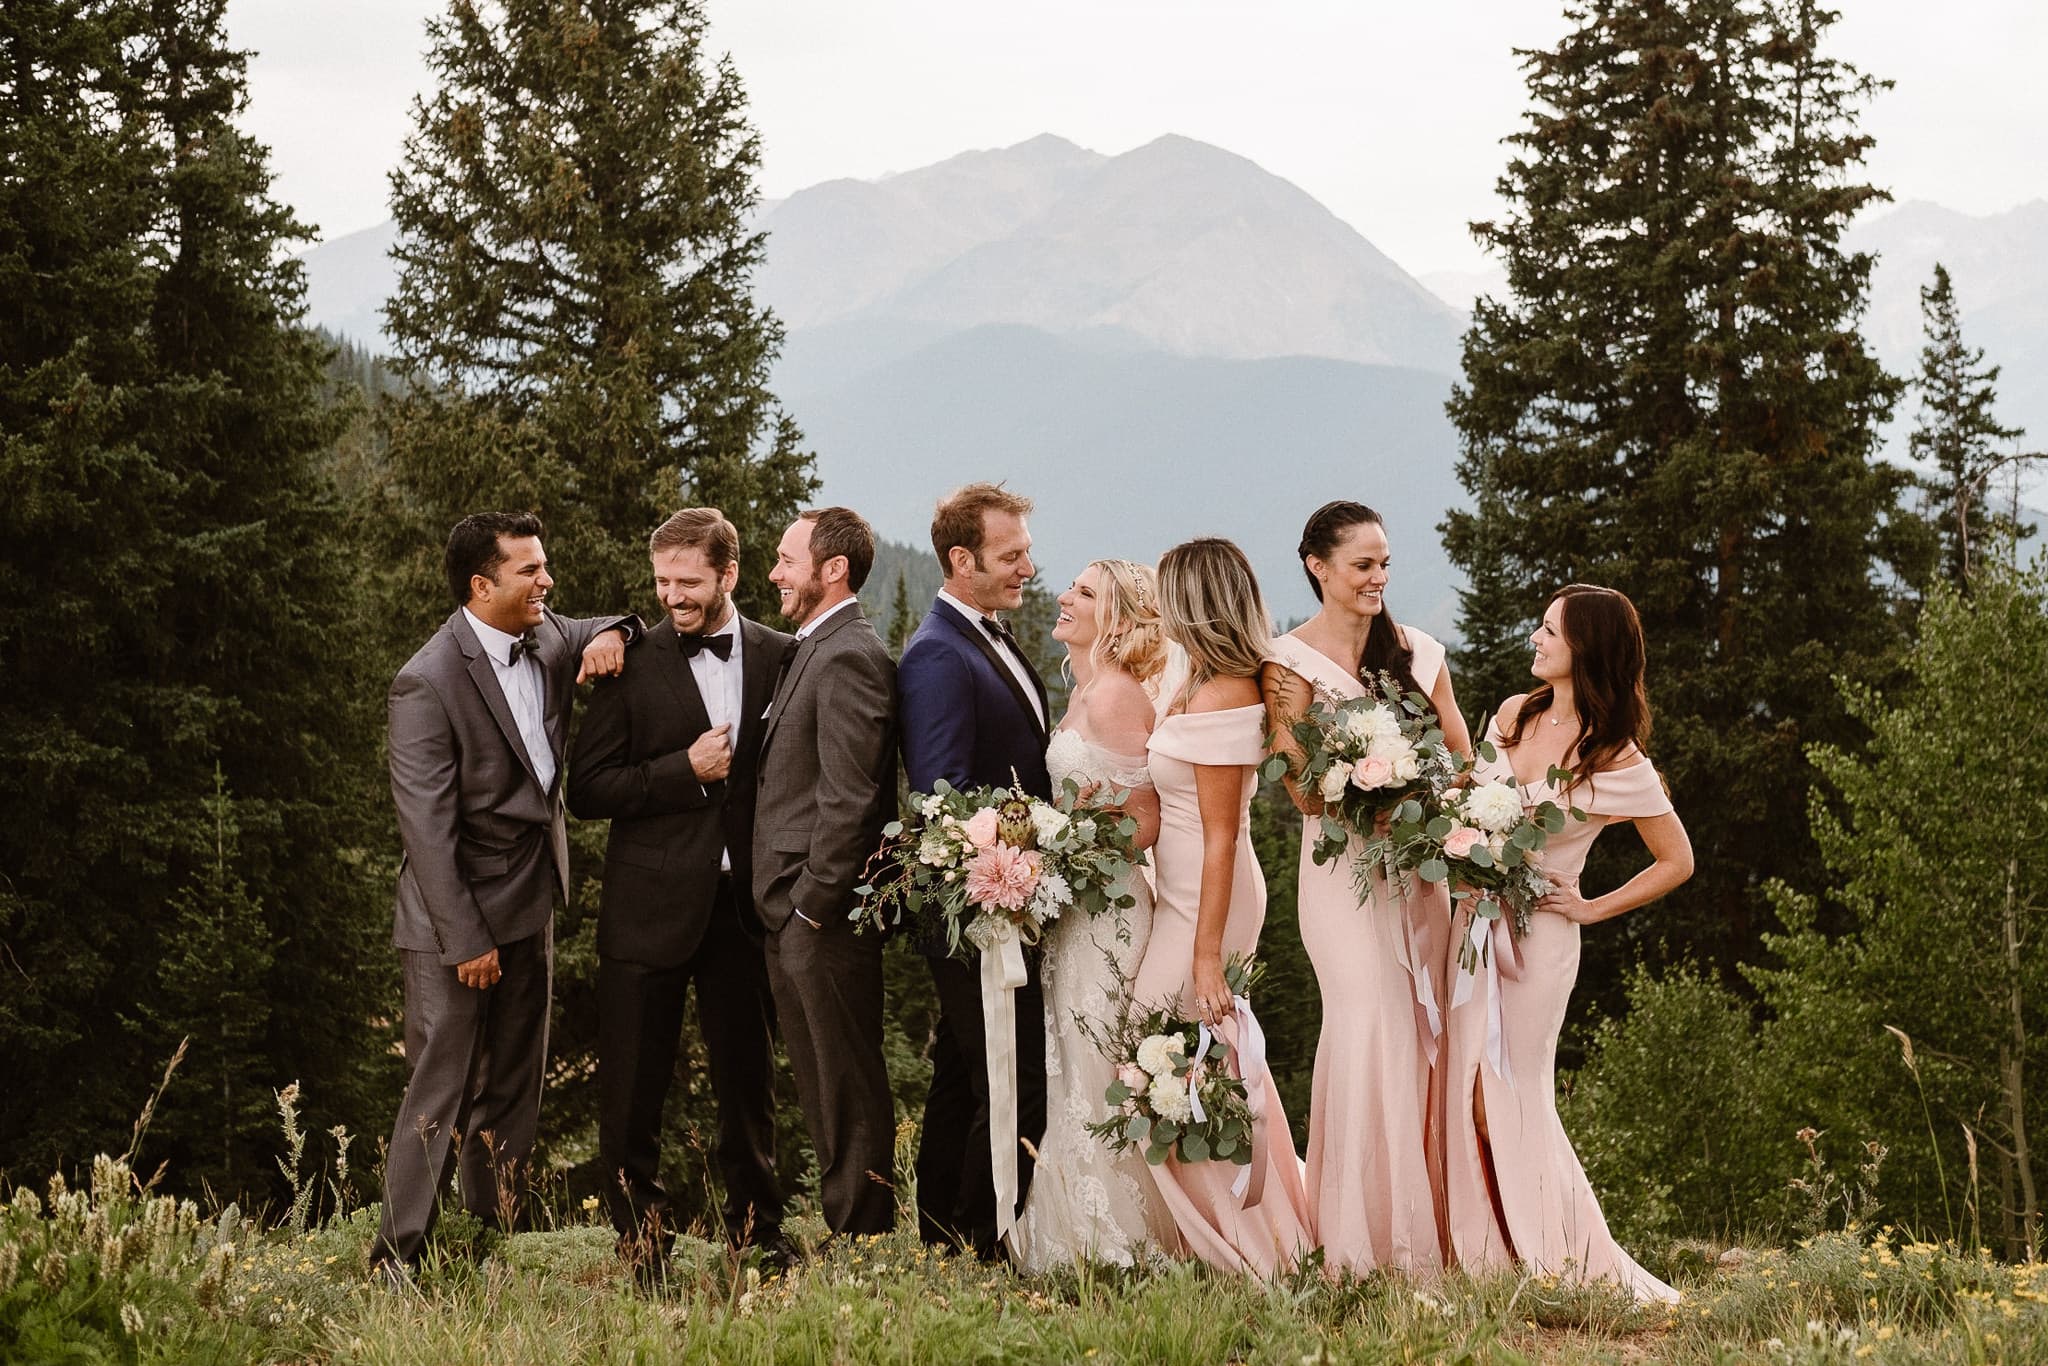 Aspen ranch wedding, Colorado mountain wedding photographer, Aspen luxury wedding, wedding party portraits